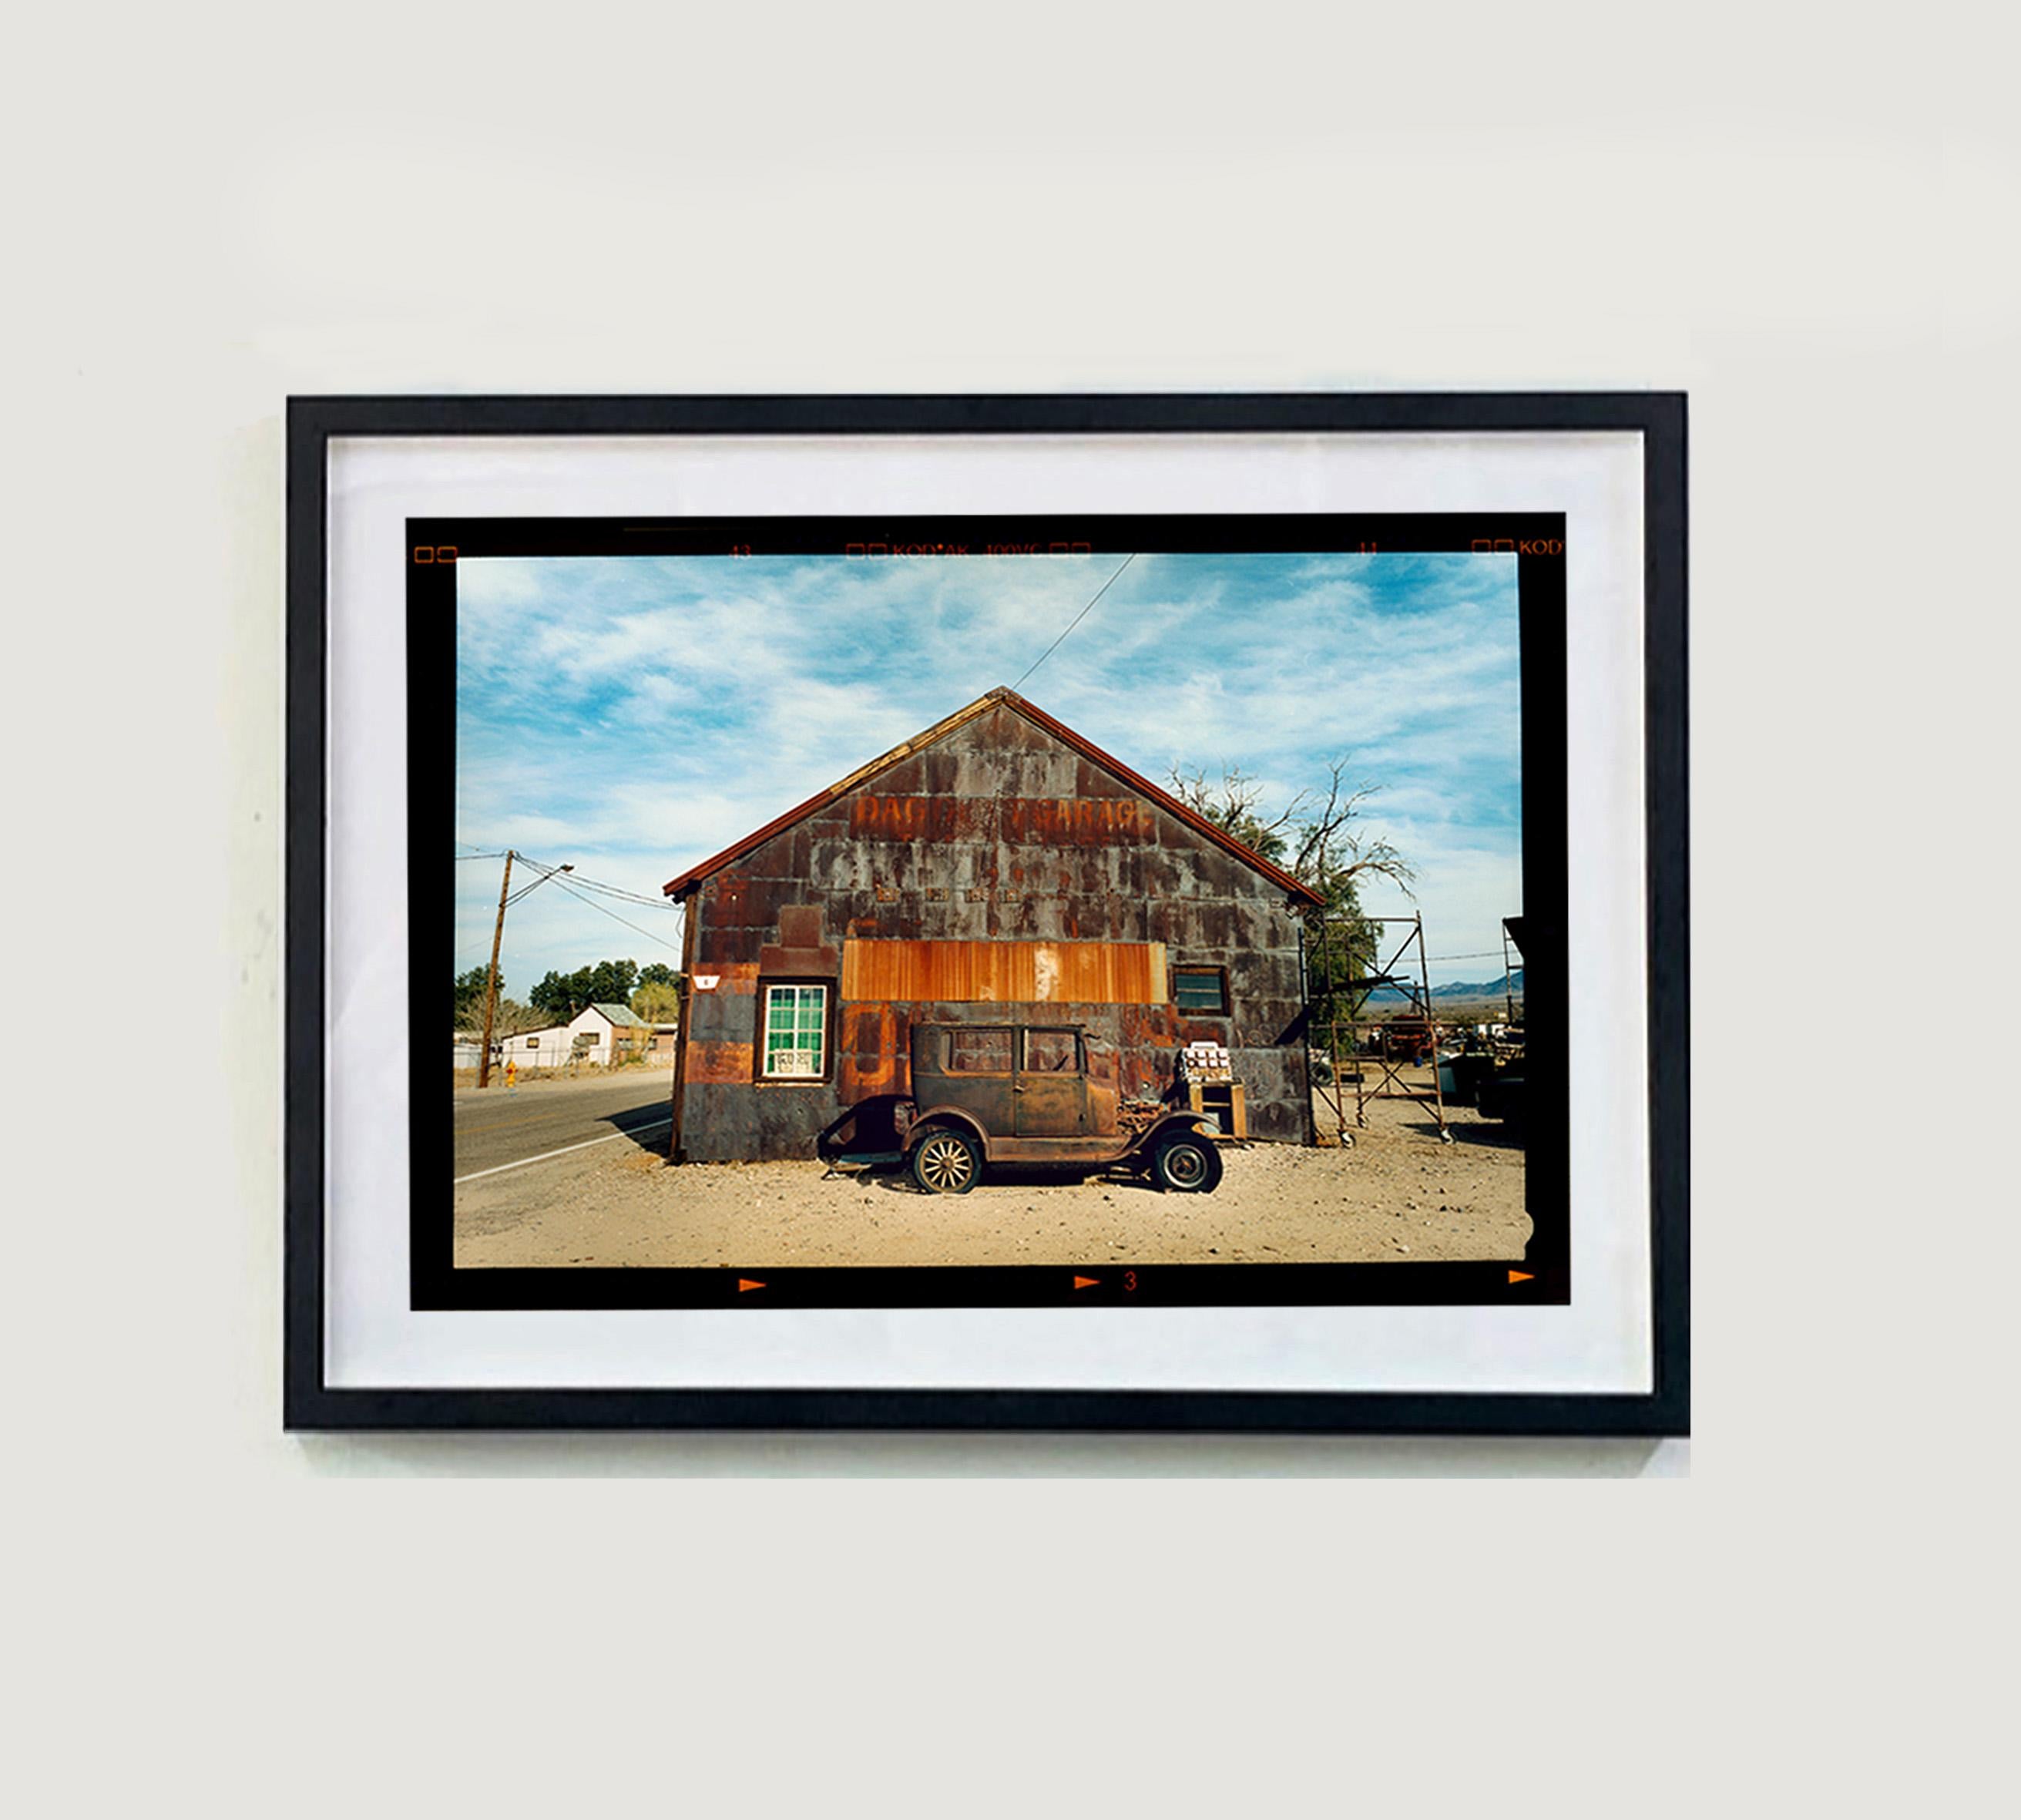 Modèle T et garage, Daggett, Californie - Photographie couleur - Gris Landscape Photograph par Richard Heeps